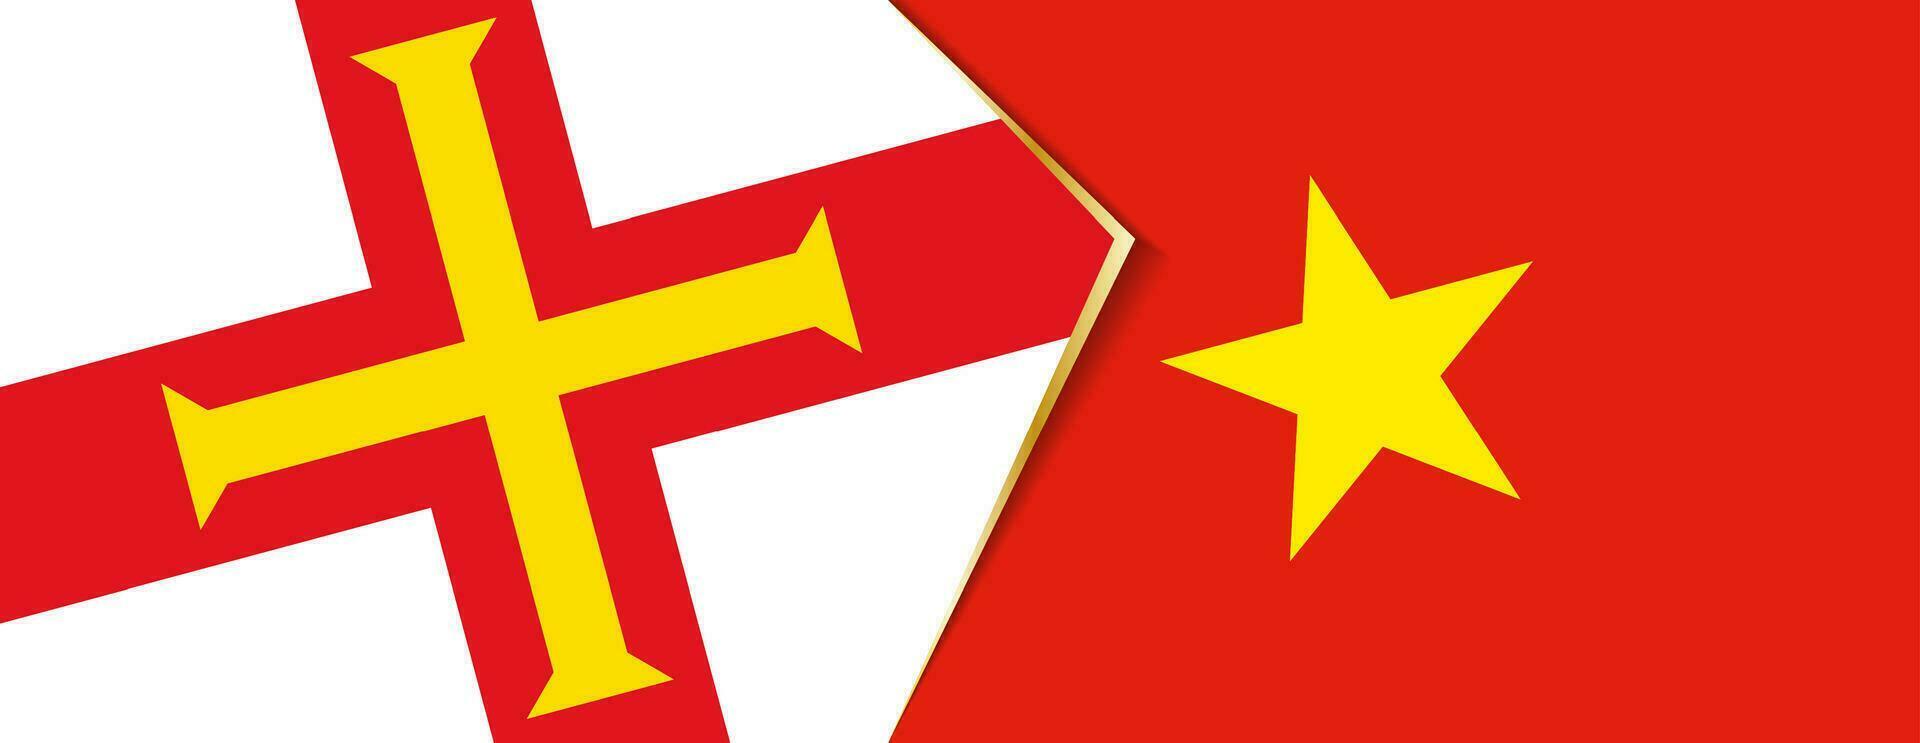 guernsey och vietnam flaggor, två vektor flaggor.